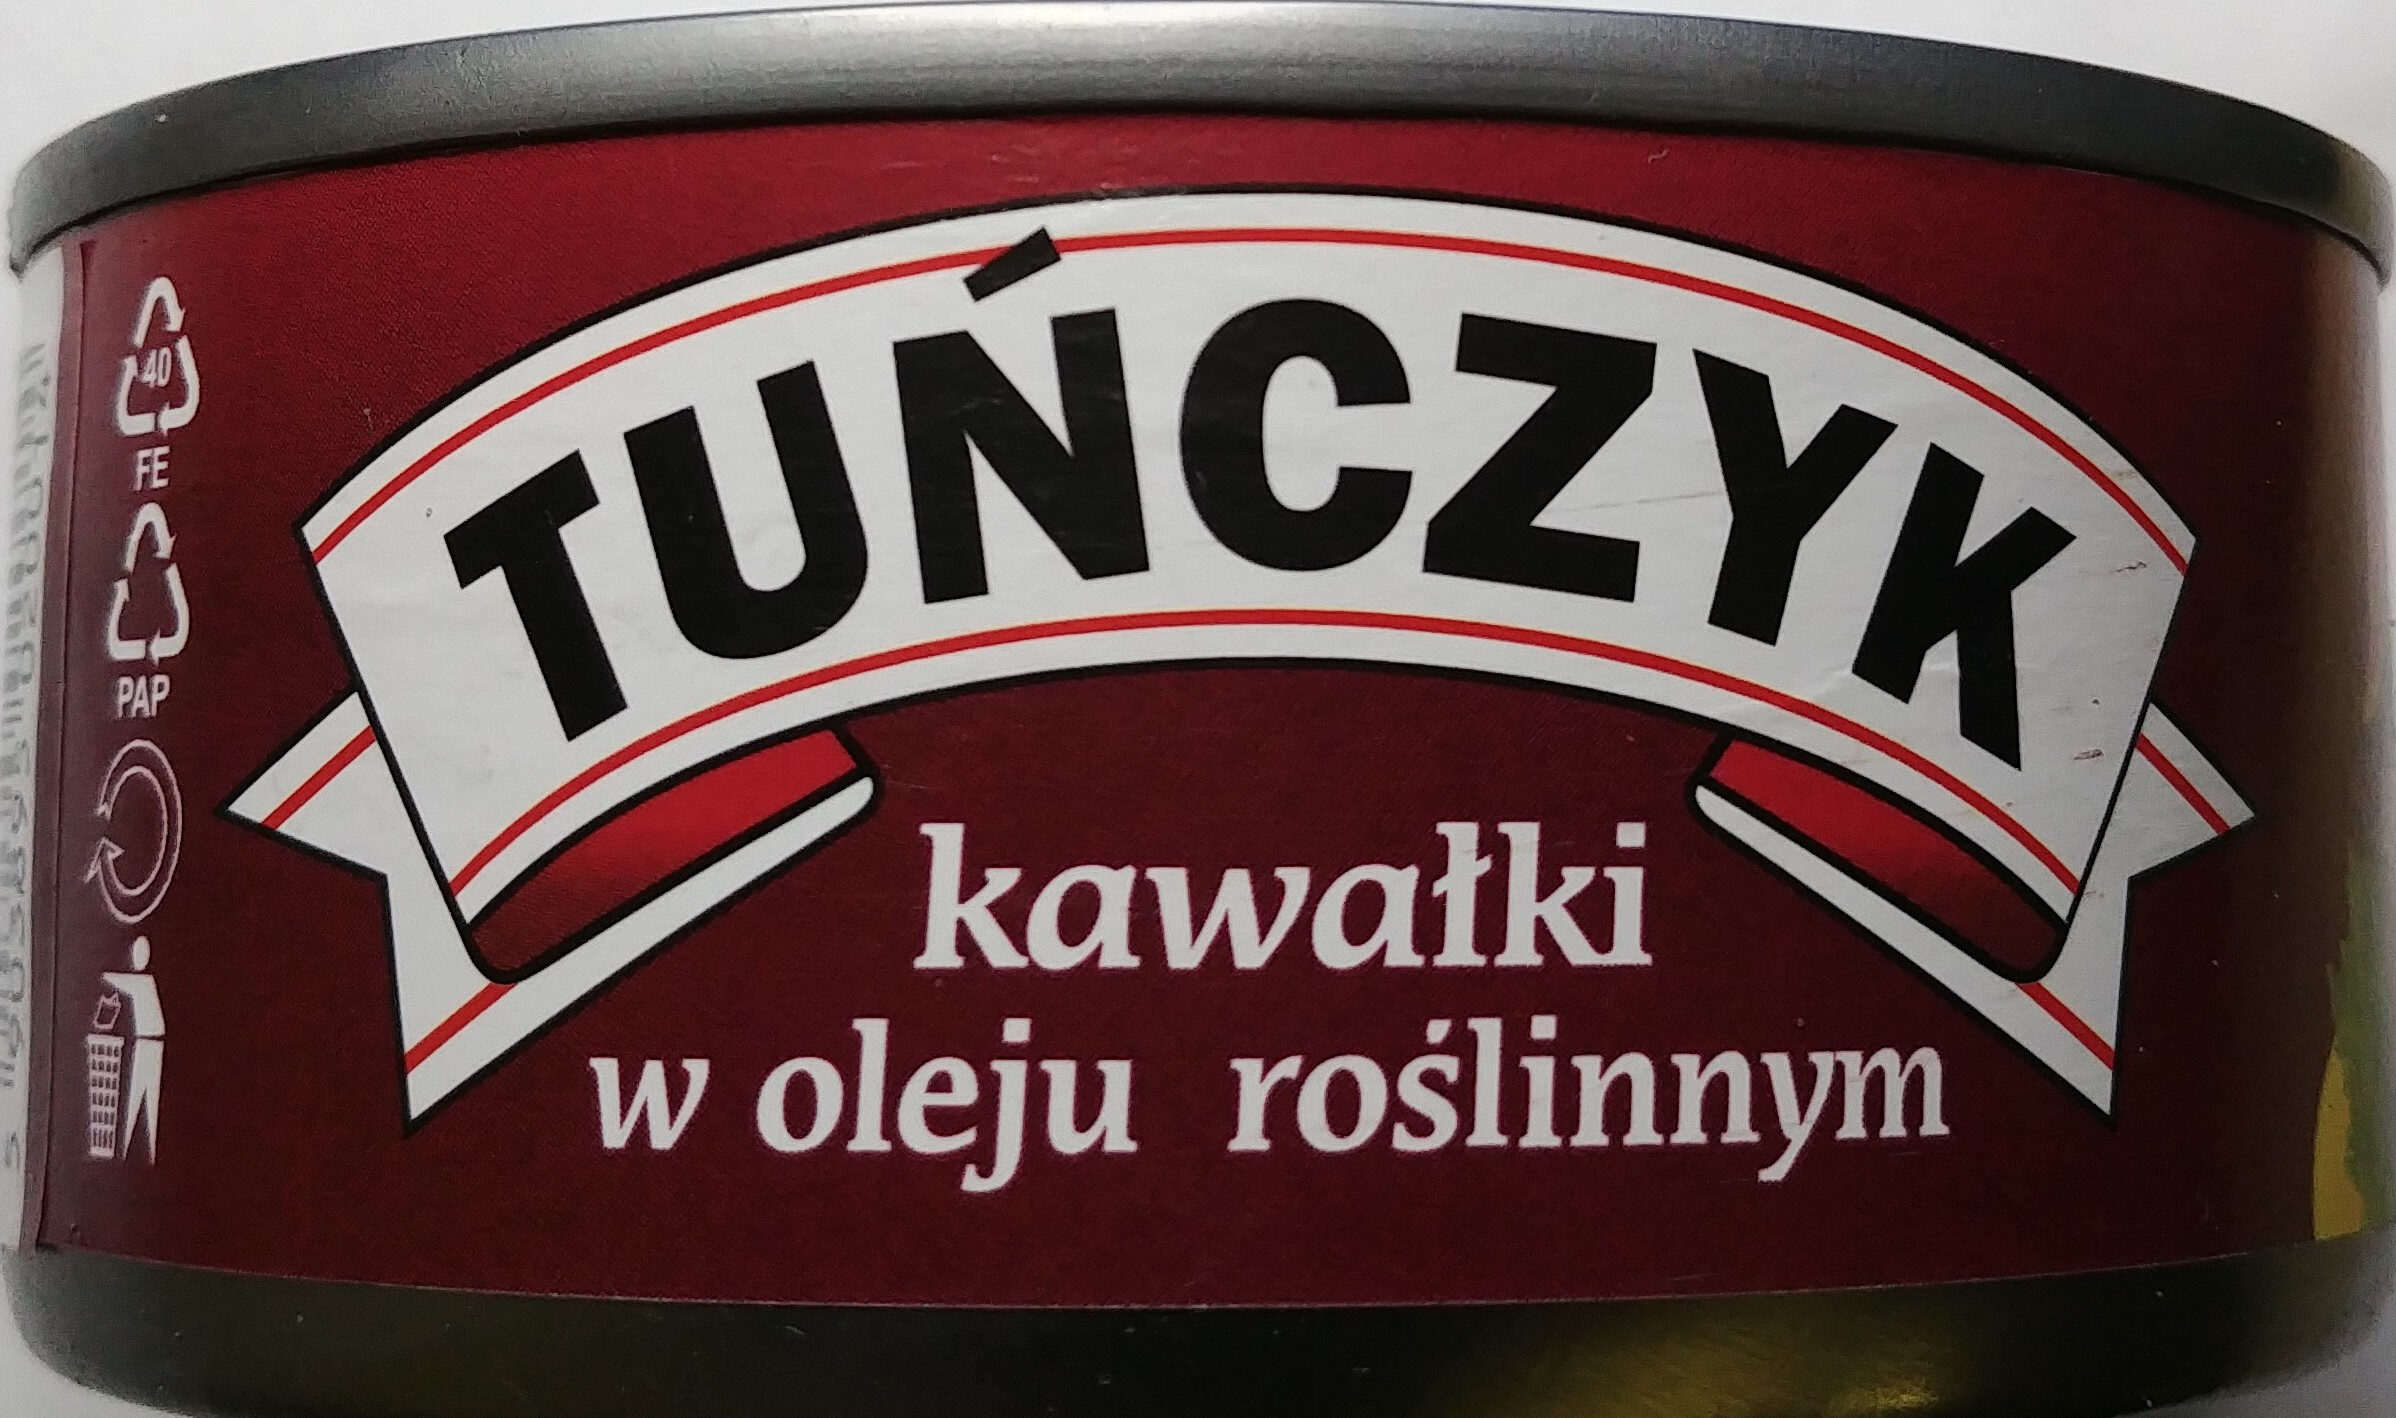 Tuńczyk kawałki w oleju roślinnym. - Produkt - pl